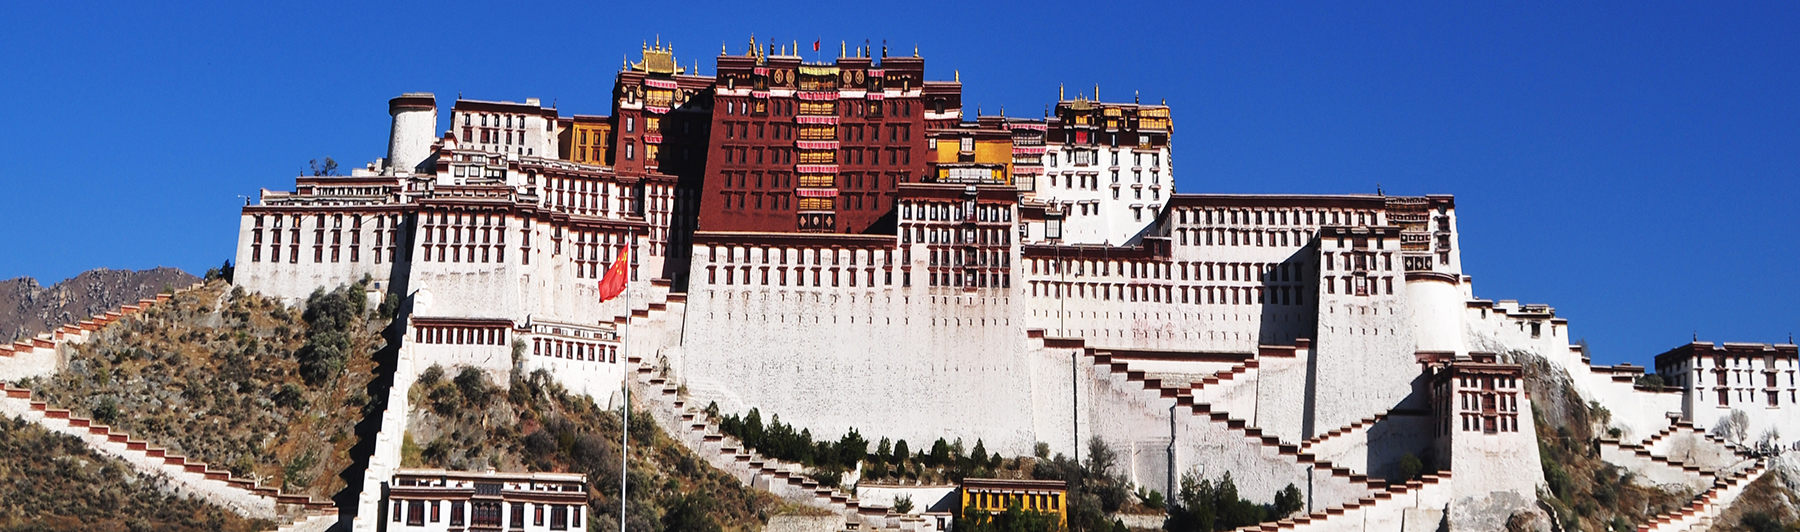 tibet trip package